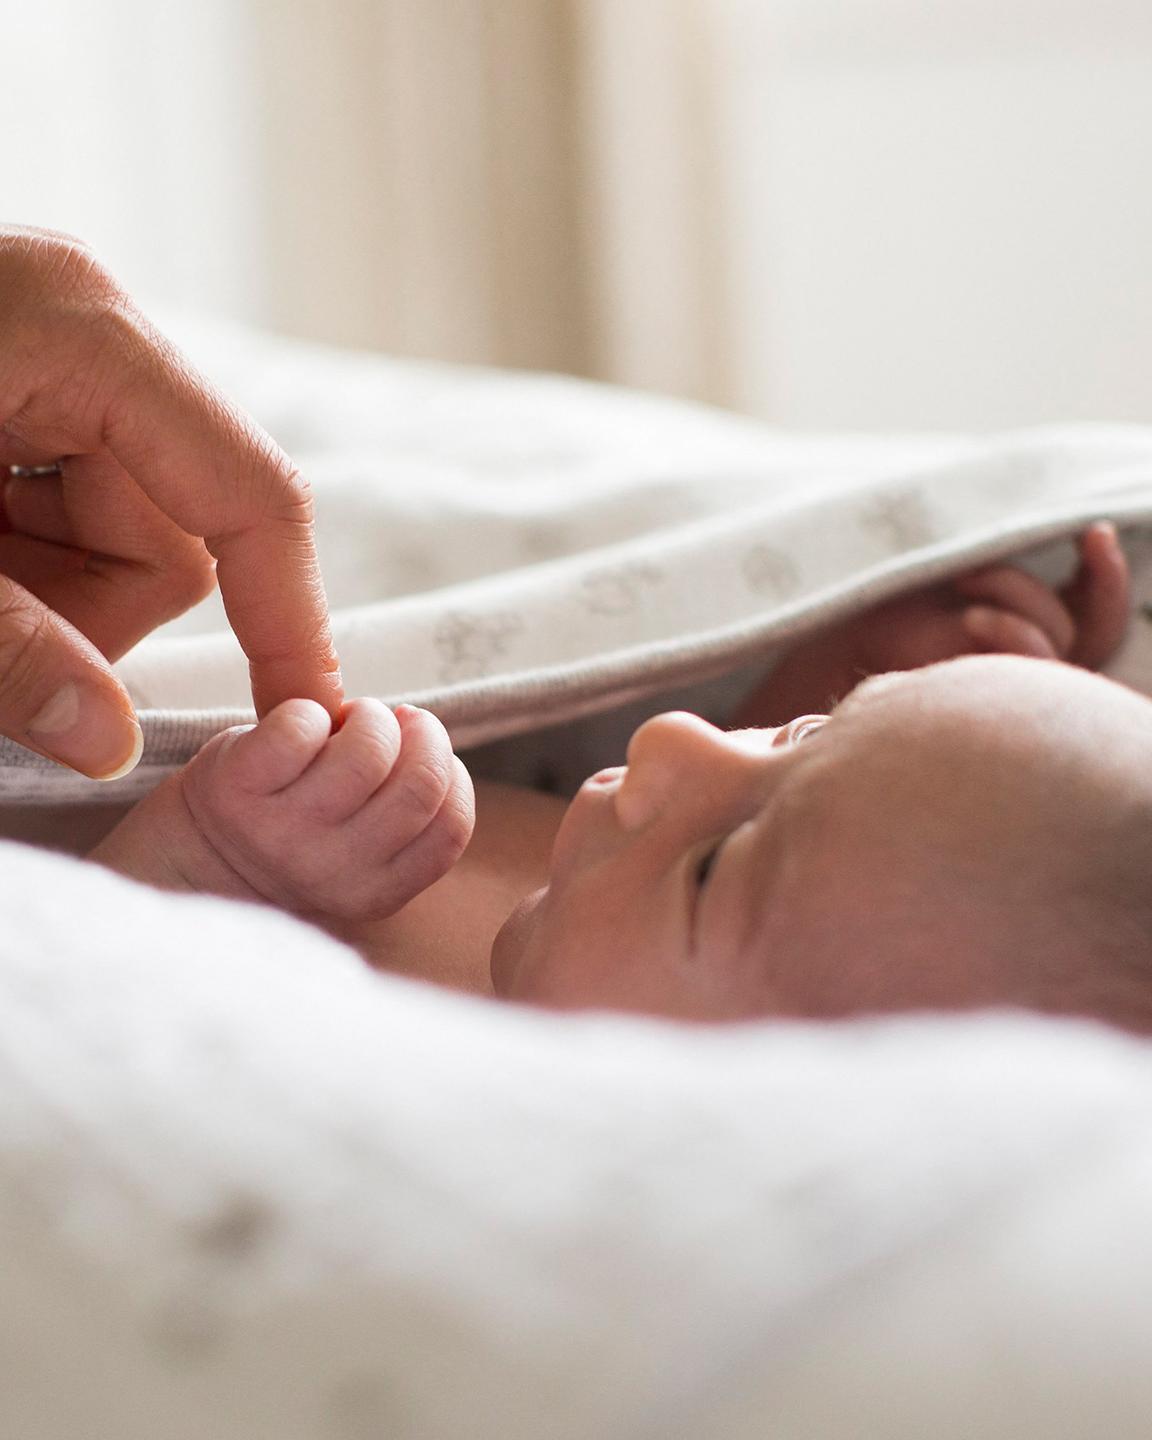 Un bébé est allongé sur un matelas avec un drap sur lui, il tient dans sa main le doigt d'une personne